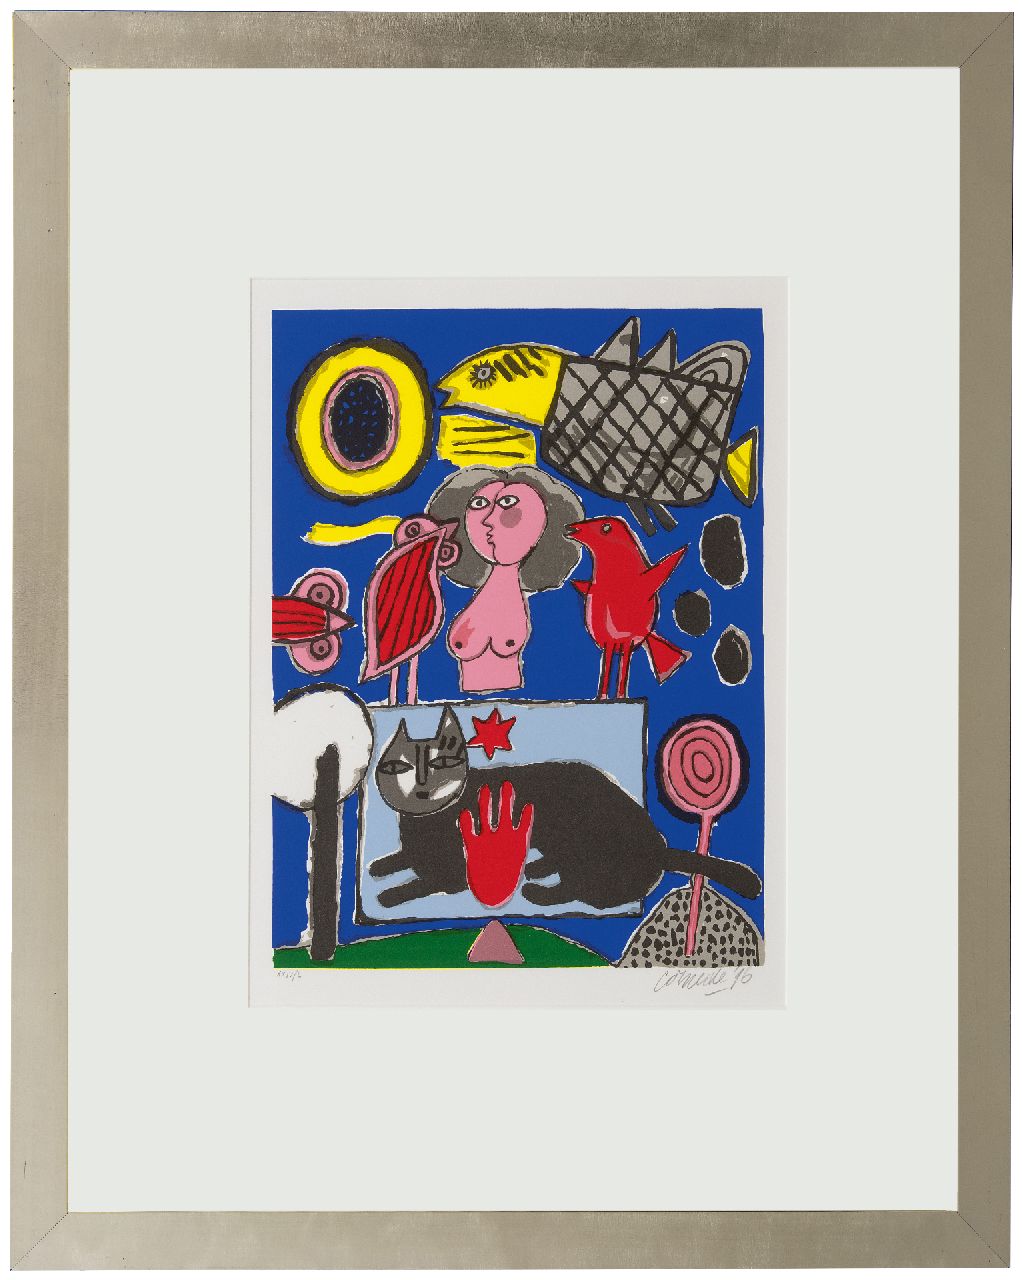 Corneille ('Corneille' Guillaume Beverloo)   | Corneille ('Corneille' Guillaume Beverloo) | Grafiek te koop aangeboden | Compositie met zwarte kat, roze vrouw en vogels, litho op papier 47,6 x 35,7 cm, gesigneerd rechtsonder (in potlood) en gedateerd '96 (in potlood)